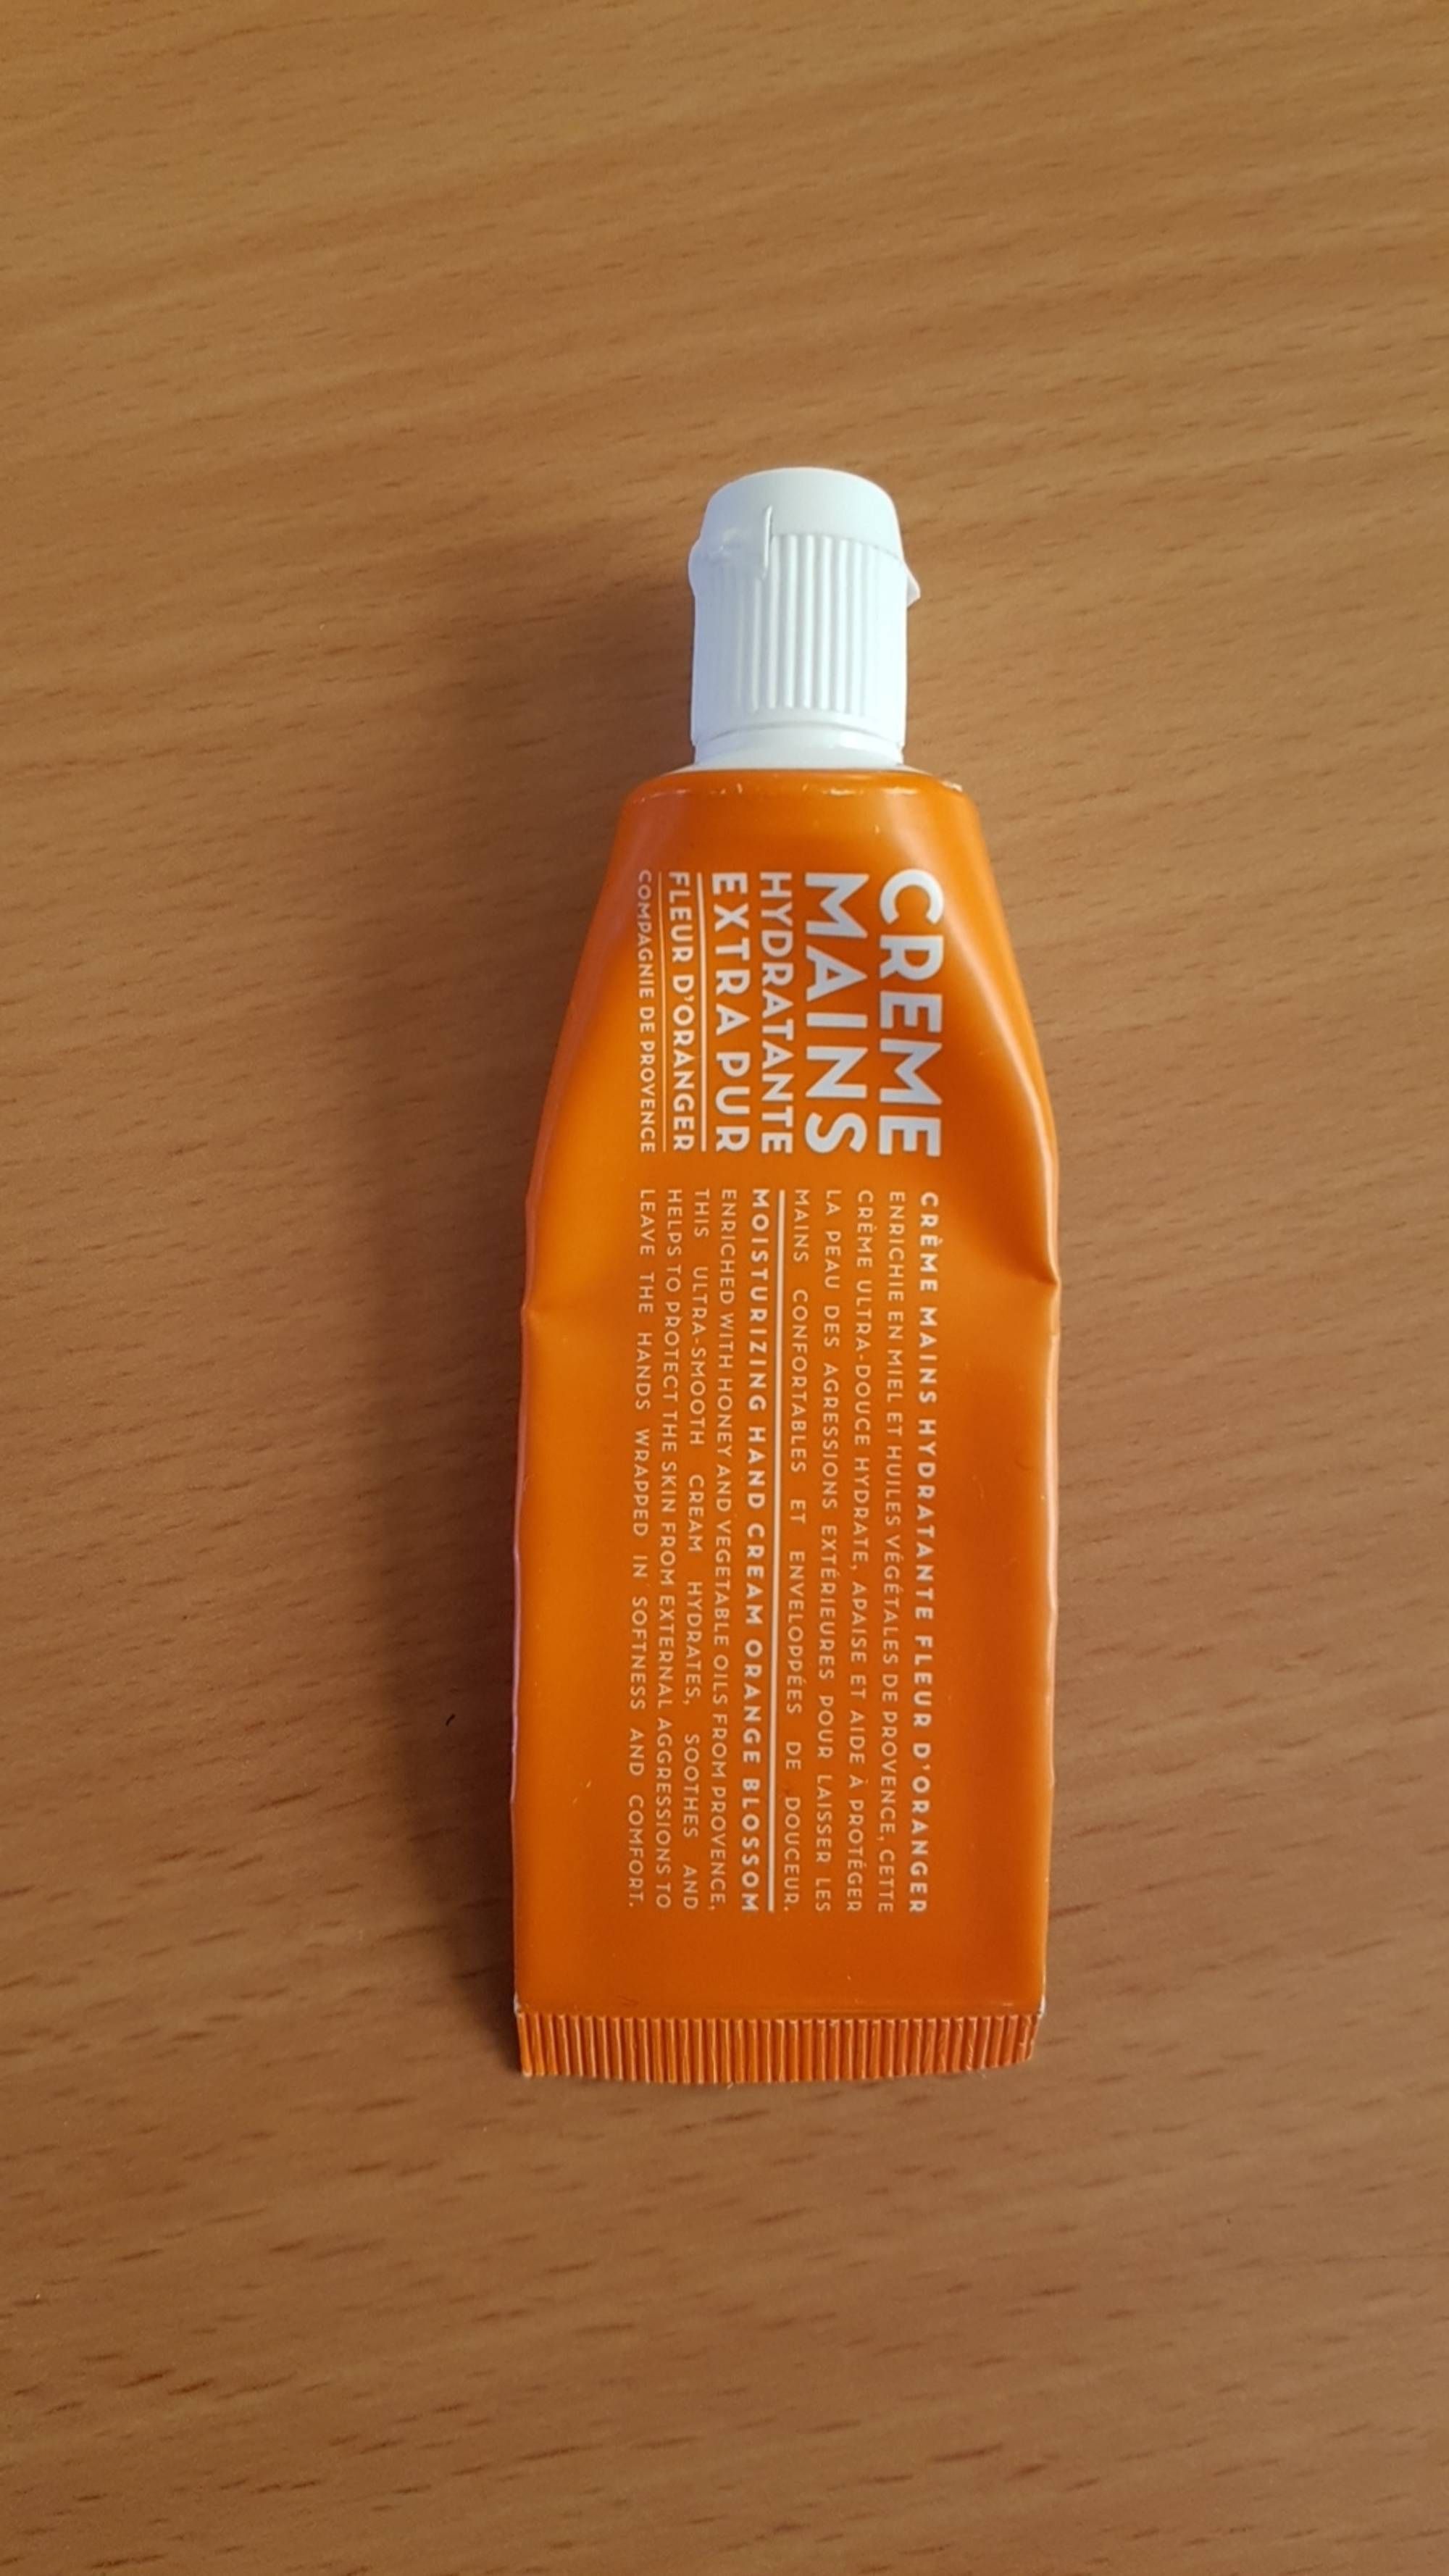 COMPAGNIE DE PROVENCE - Fleur d'oranger - Crème mains hydratante extra pur 